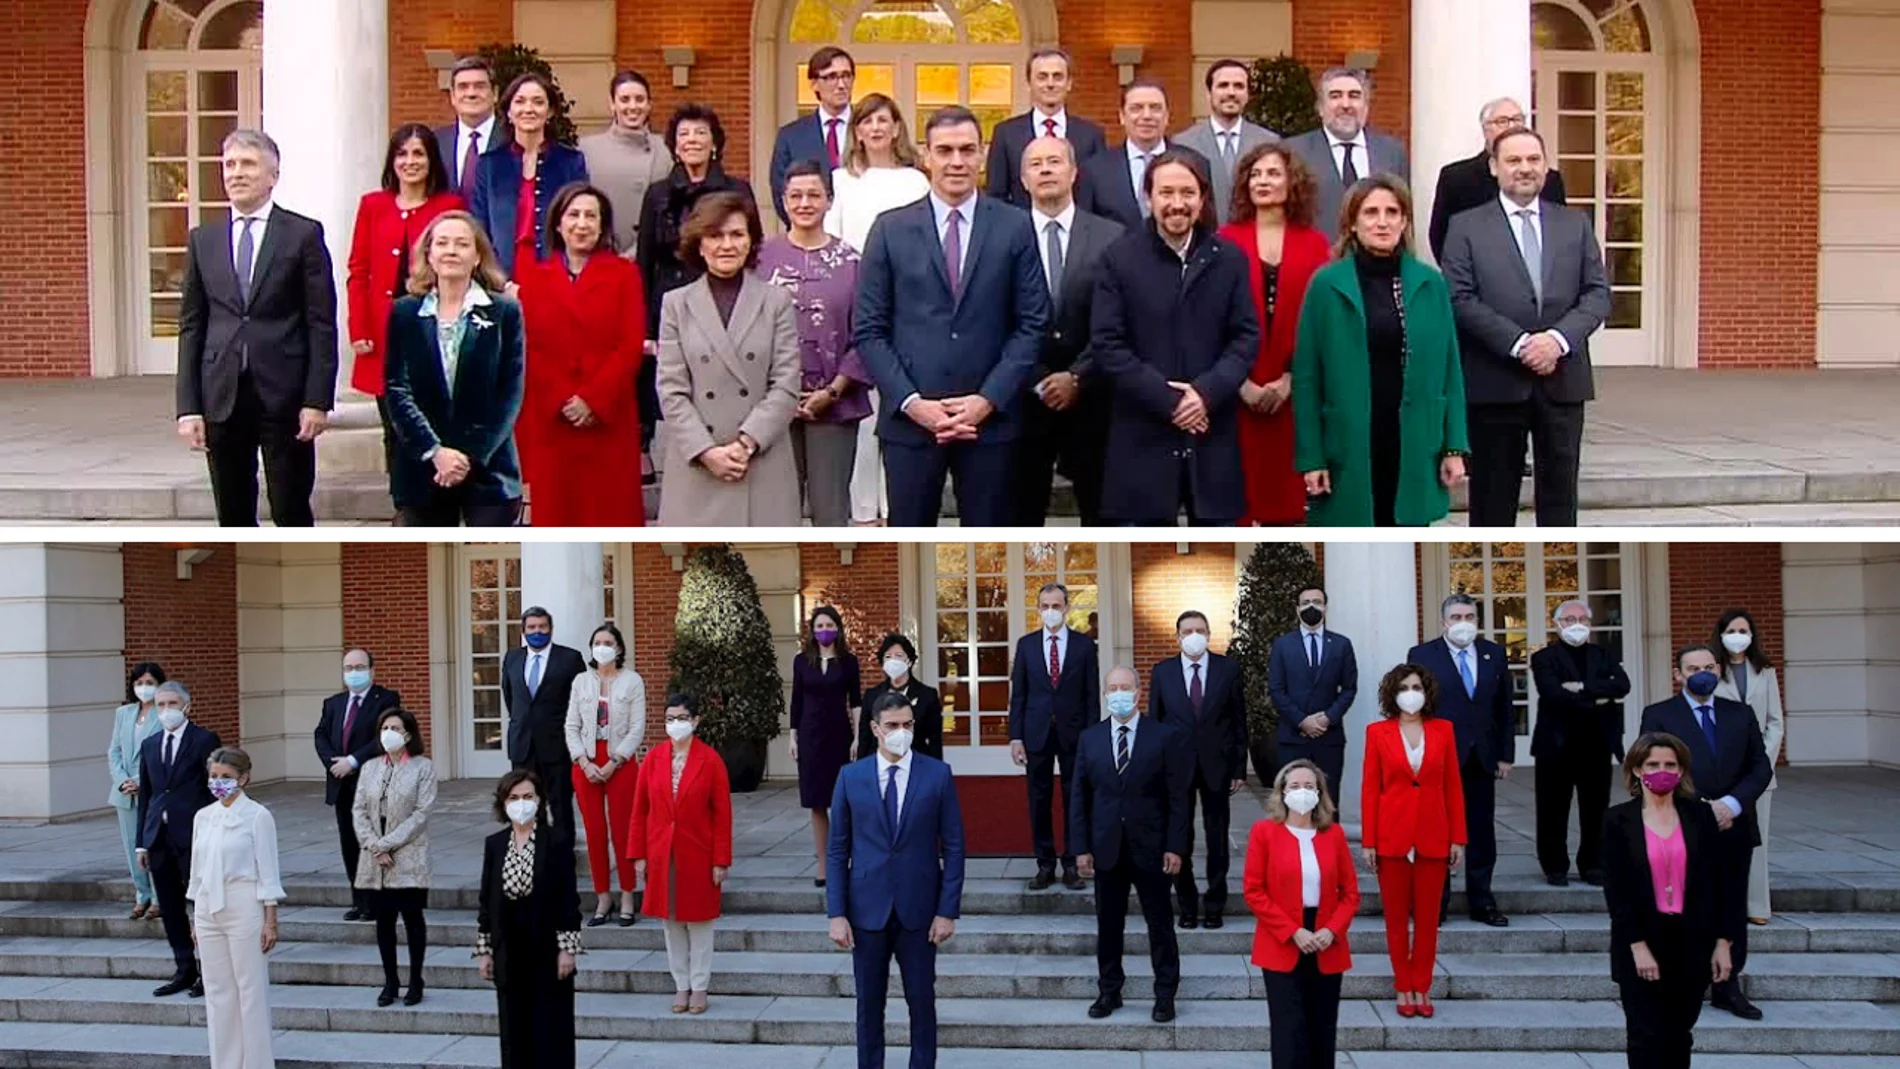 Ausencias y nuevas caras entre las dos fotos de Gobierno realizadas en poco más de 1 año